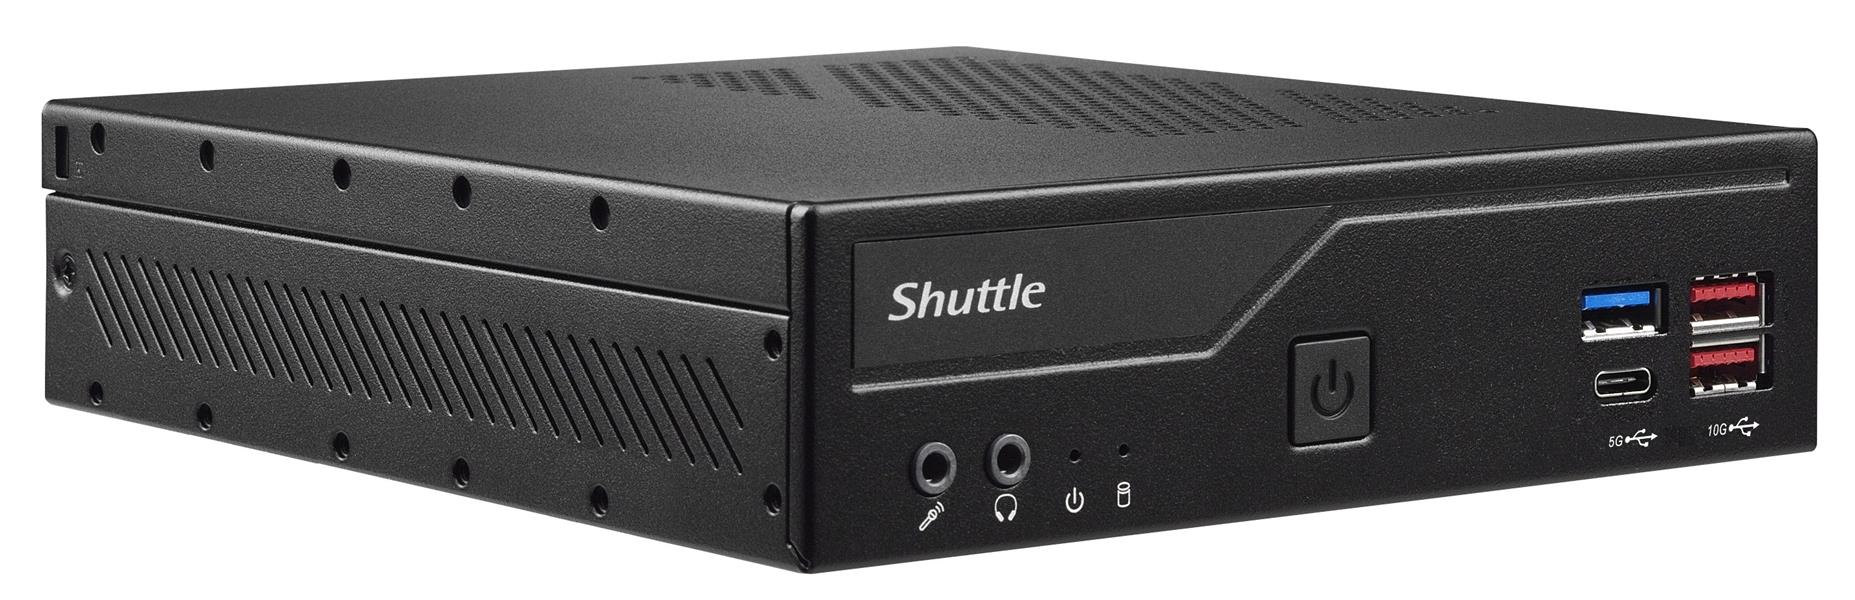 Shuttle Slim PC DH670V2 , S1700, 2x HDMI, 2x DP , 2x 2.5G LAN, 2x COM, 8x USB, 1x 2.5"", 2x M.2, 24/7 permanent gebruik, incl. VESA